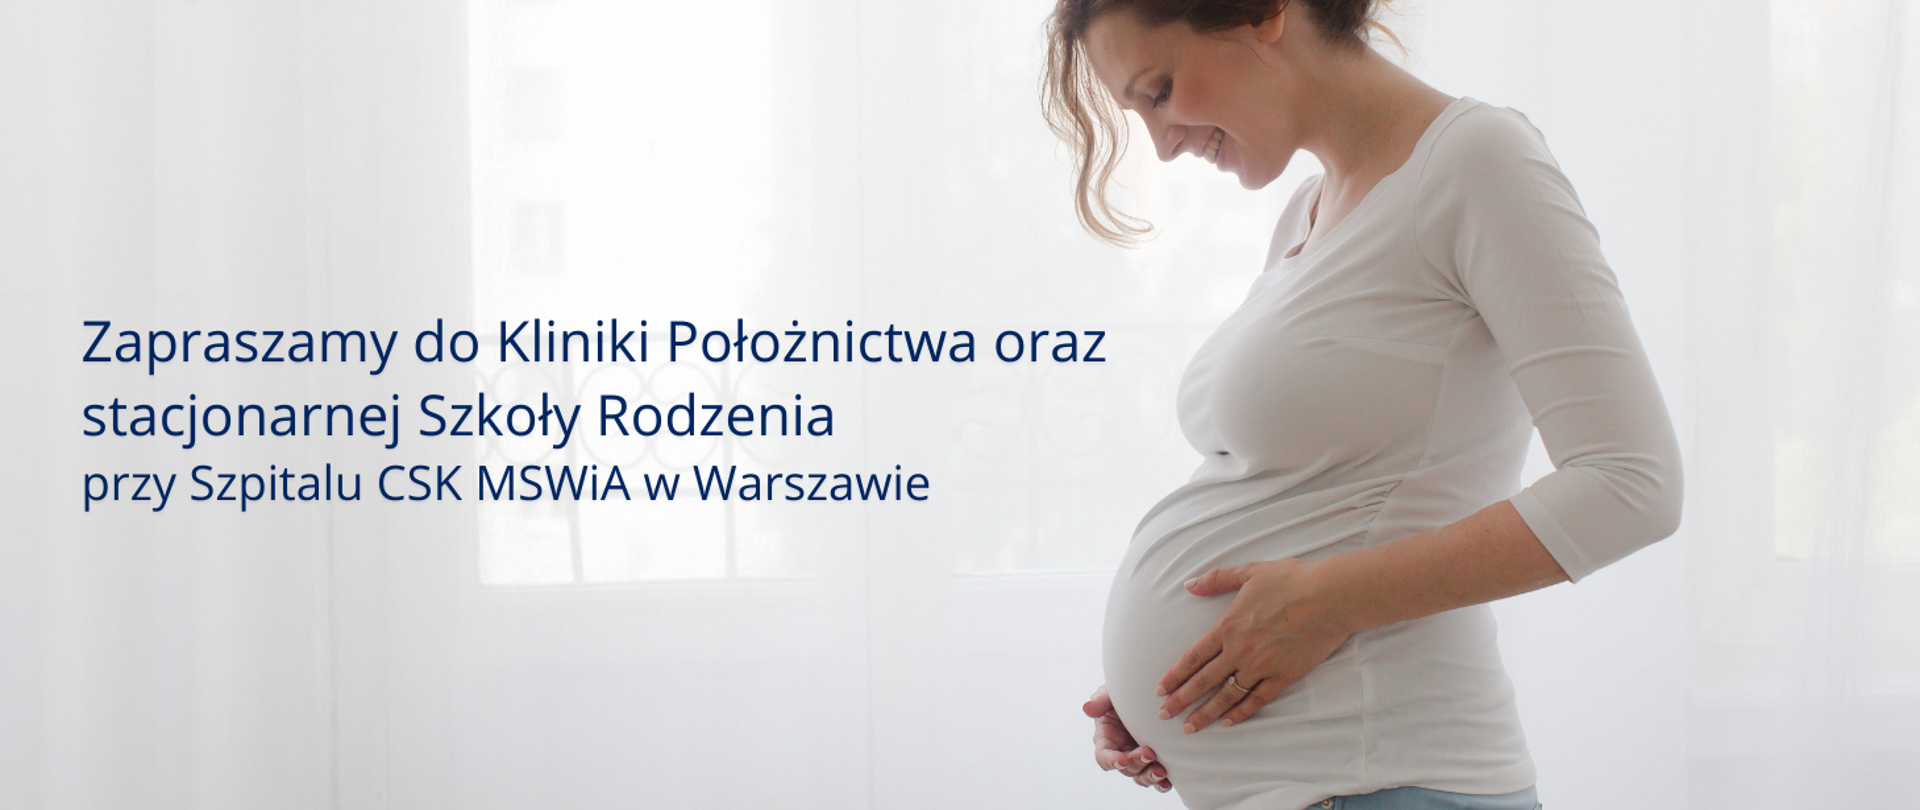 Zapraszamy do Kliniki Położnictwa oraz stacjonarnej Szkoły Rodzenia przy Szpitalu CSK MSWiA w Warszawie